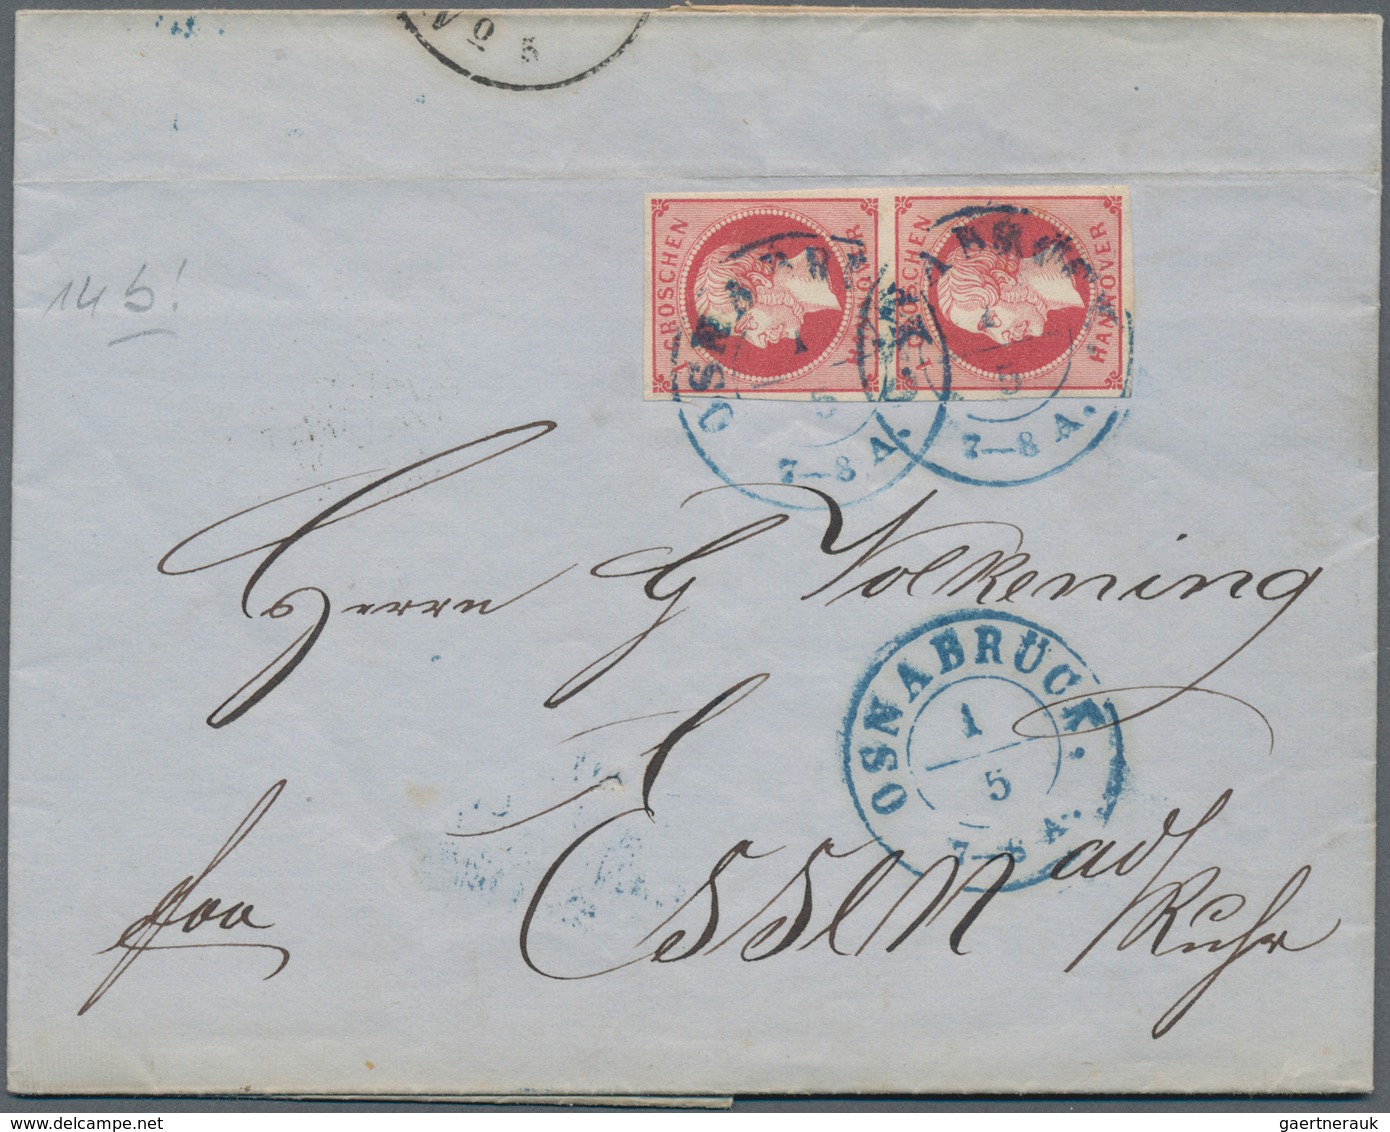 Hannover - Marken und Briefe: 1850/1867 (ca.), Partie von ca. 90 Briefen/Ganzsachen/Vorderseiten ab